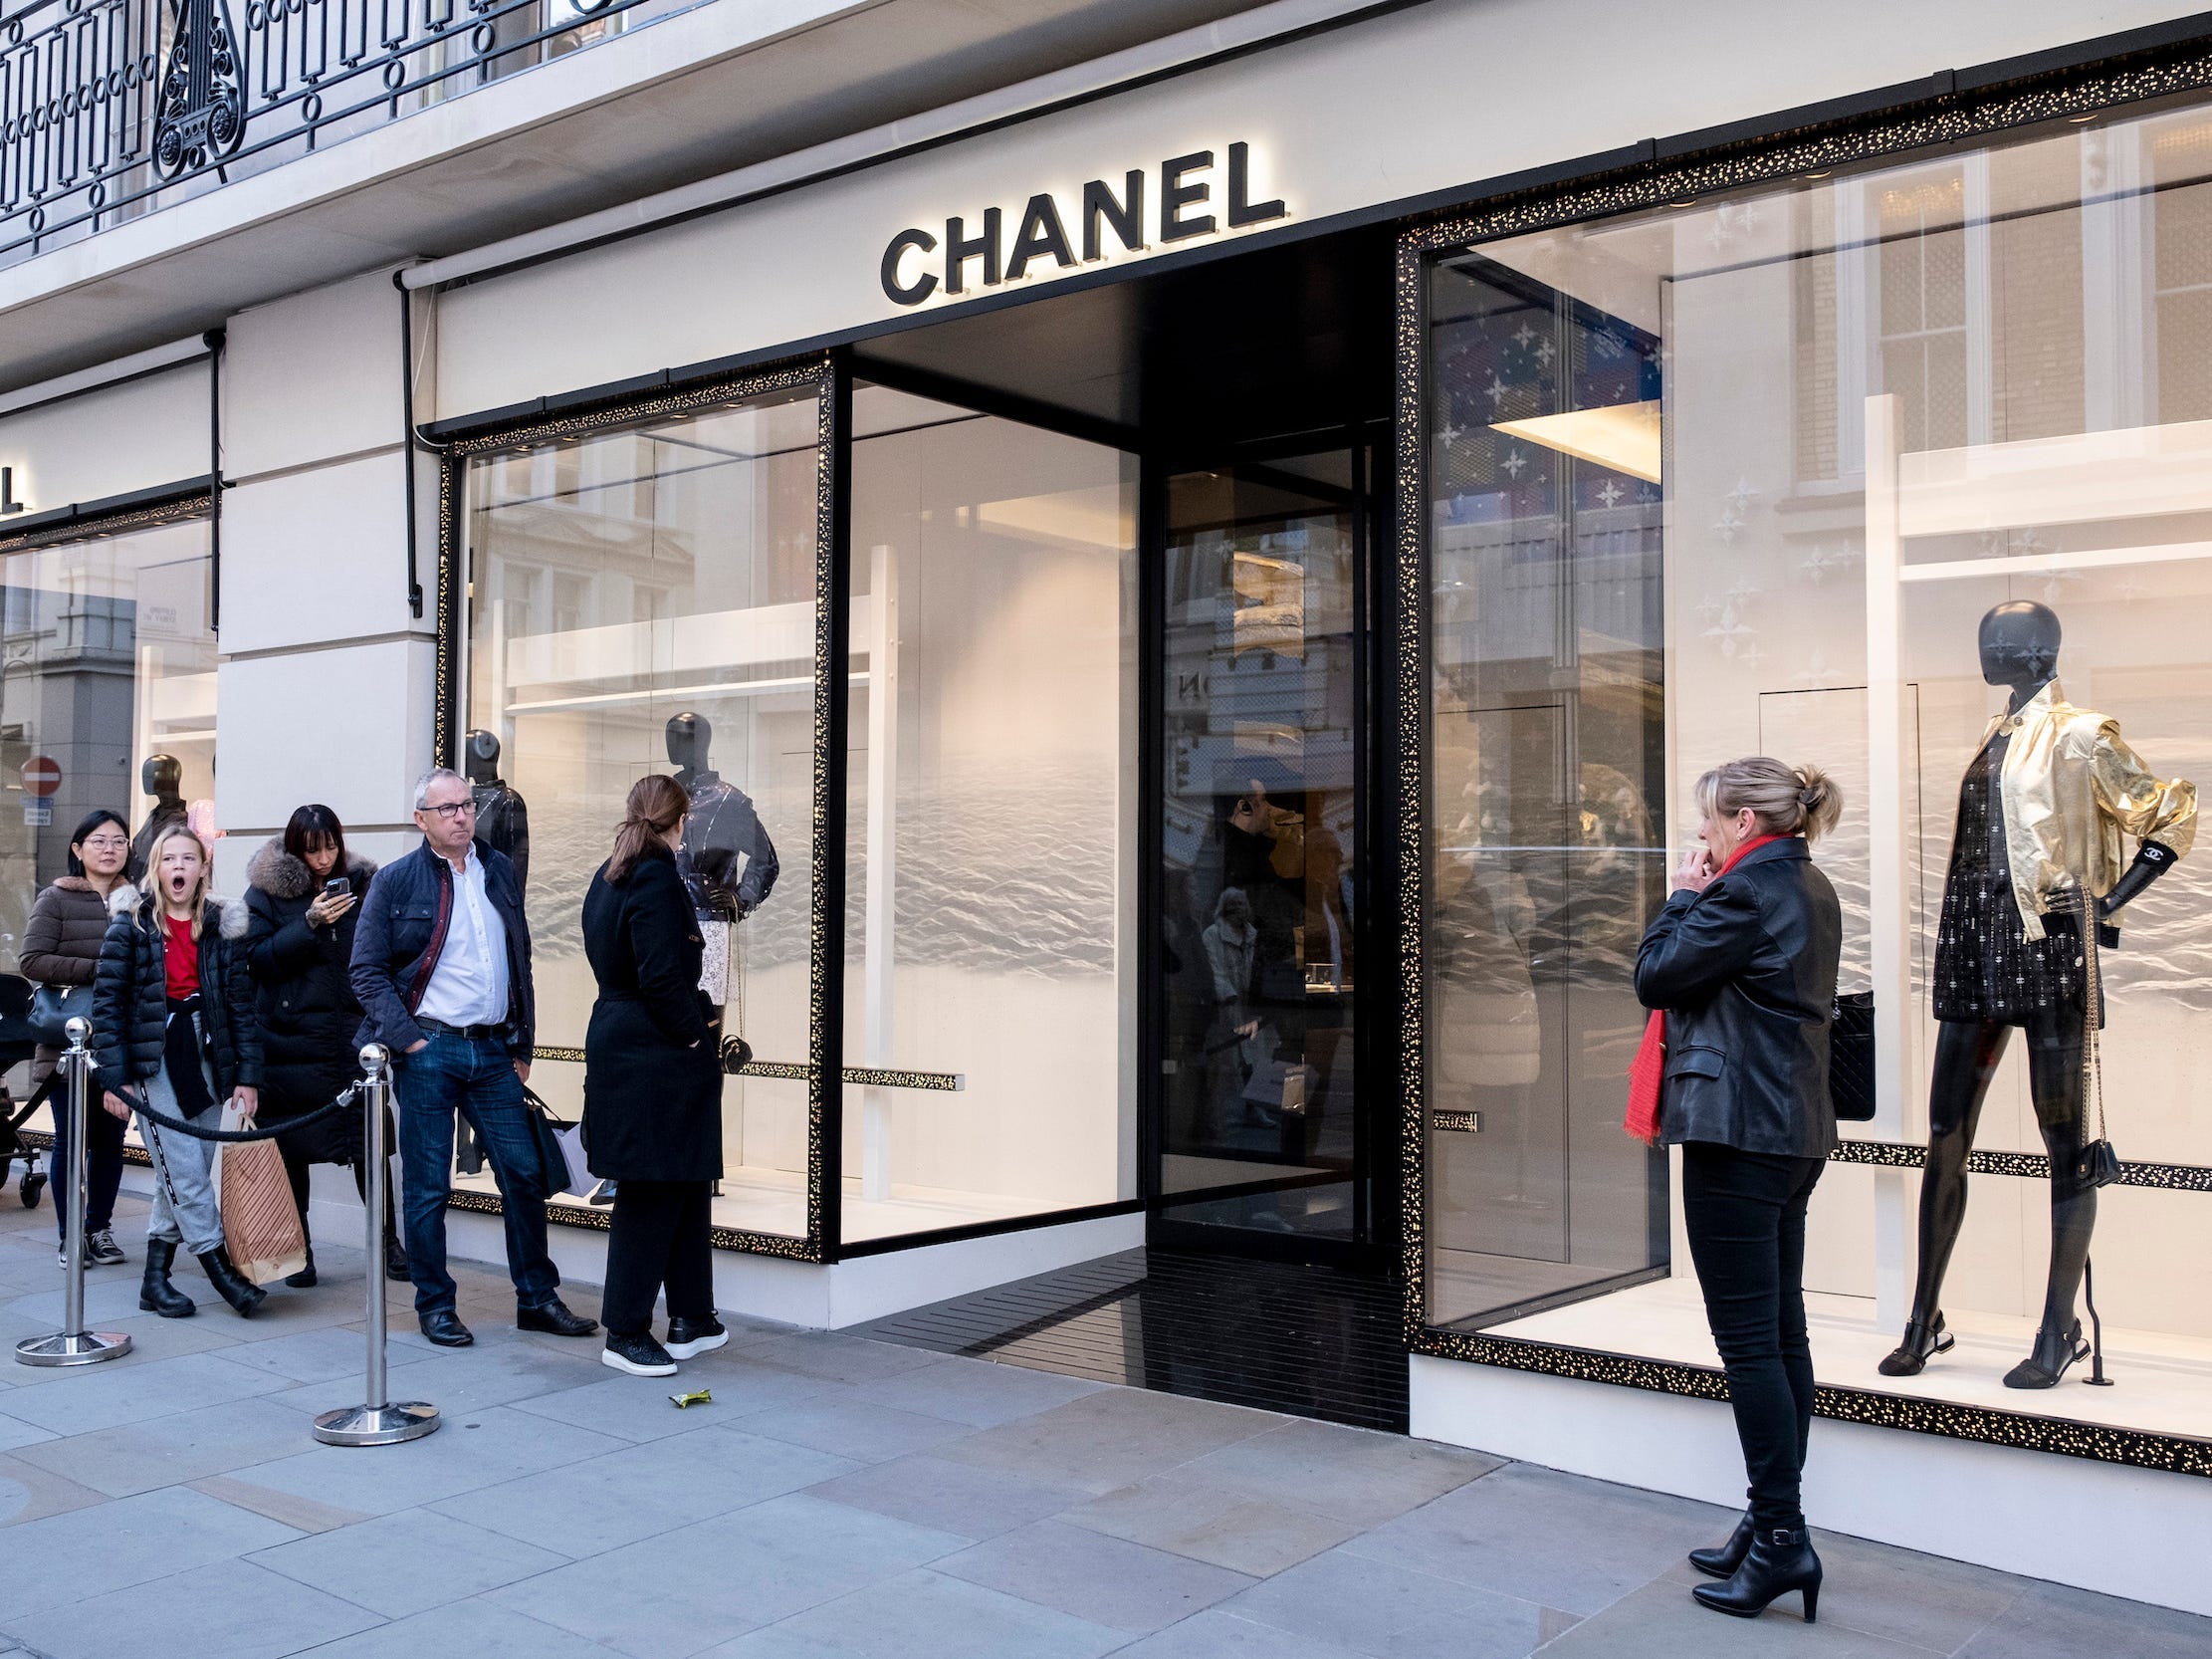 People wait in line outside Chanel store